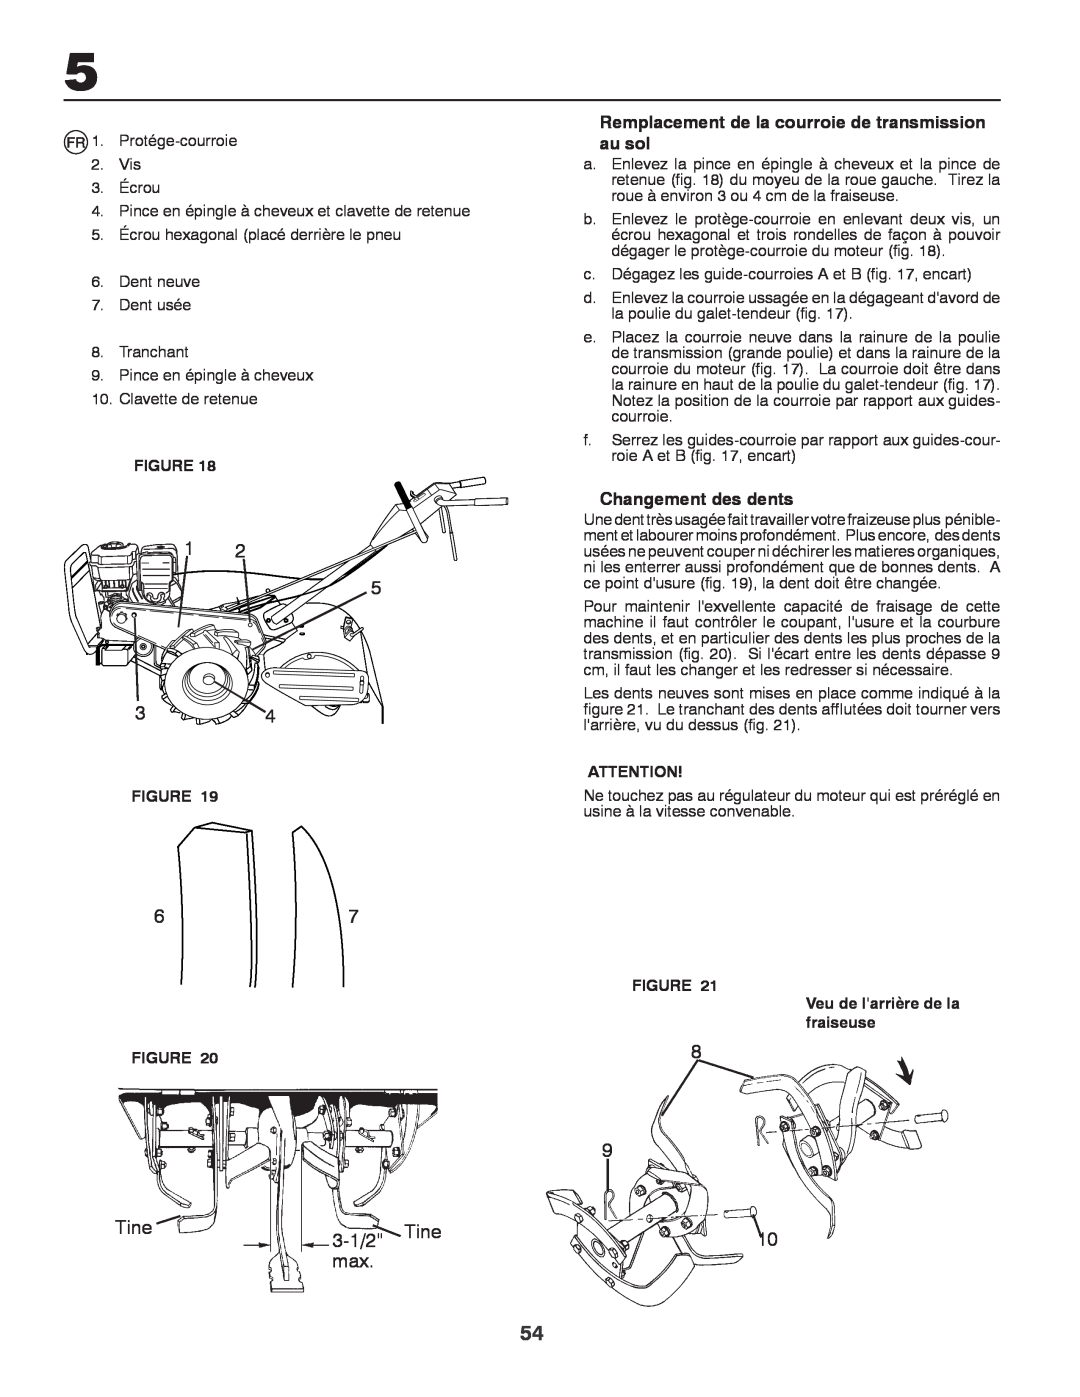 Husqvarna CRT81 instruction manual 3-1/2 Tine, Remplacement de la courroie de transmission au sol, Changement des dents 